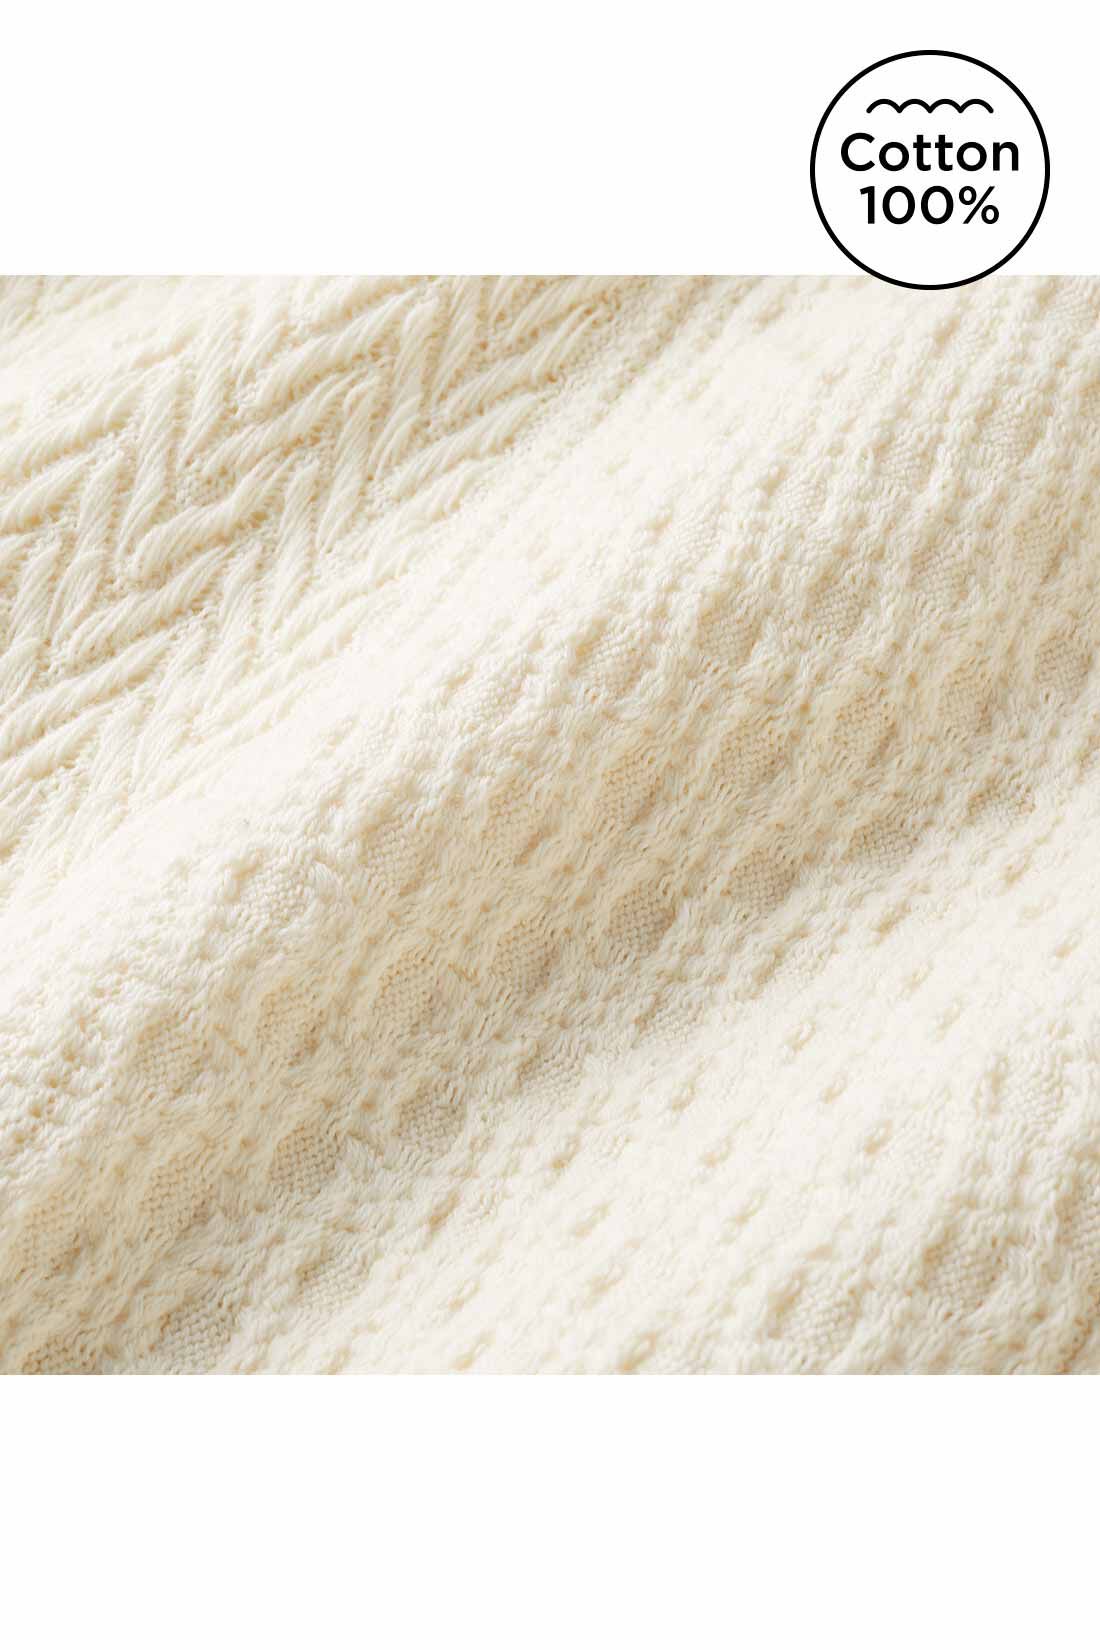 Live in  comfort|Live love cottonプロジェクト　リブ イン コンフォート　編み柄が素敵なオーガニックコットンロングスカート〈アイボリー〉|ニット見えするジャカード編みの、薄くてやわらかいカットソー素材。